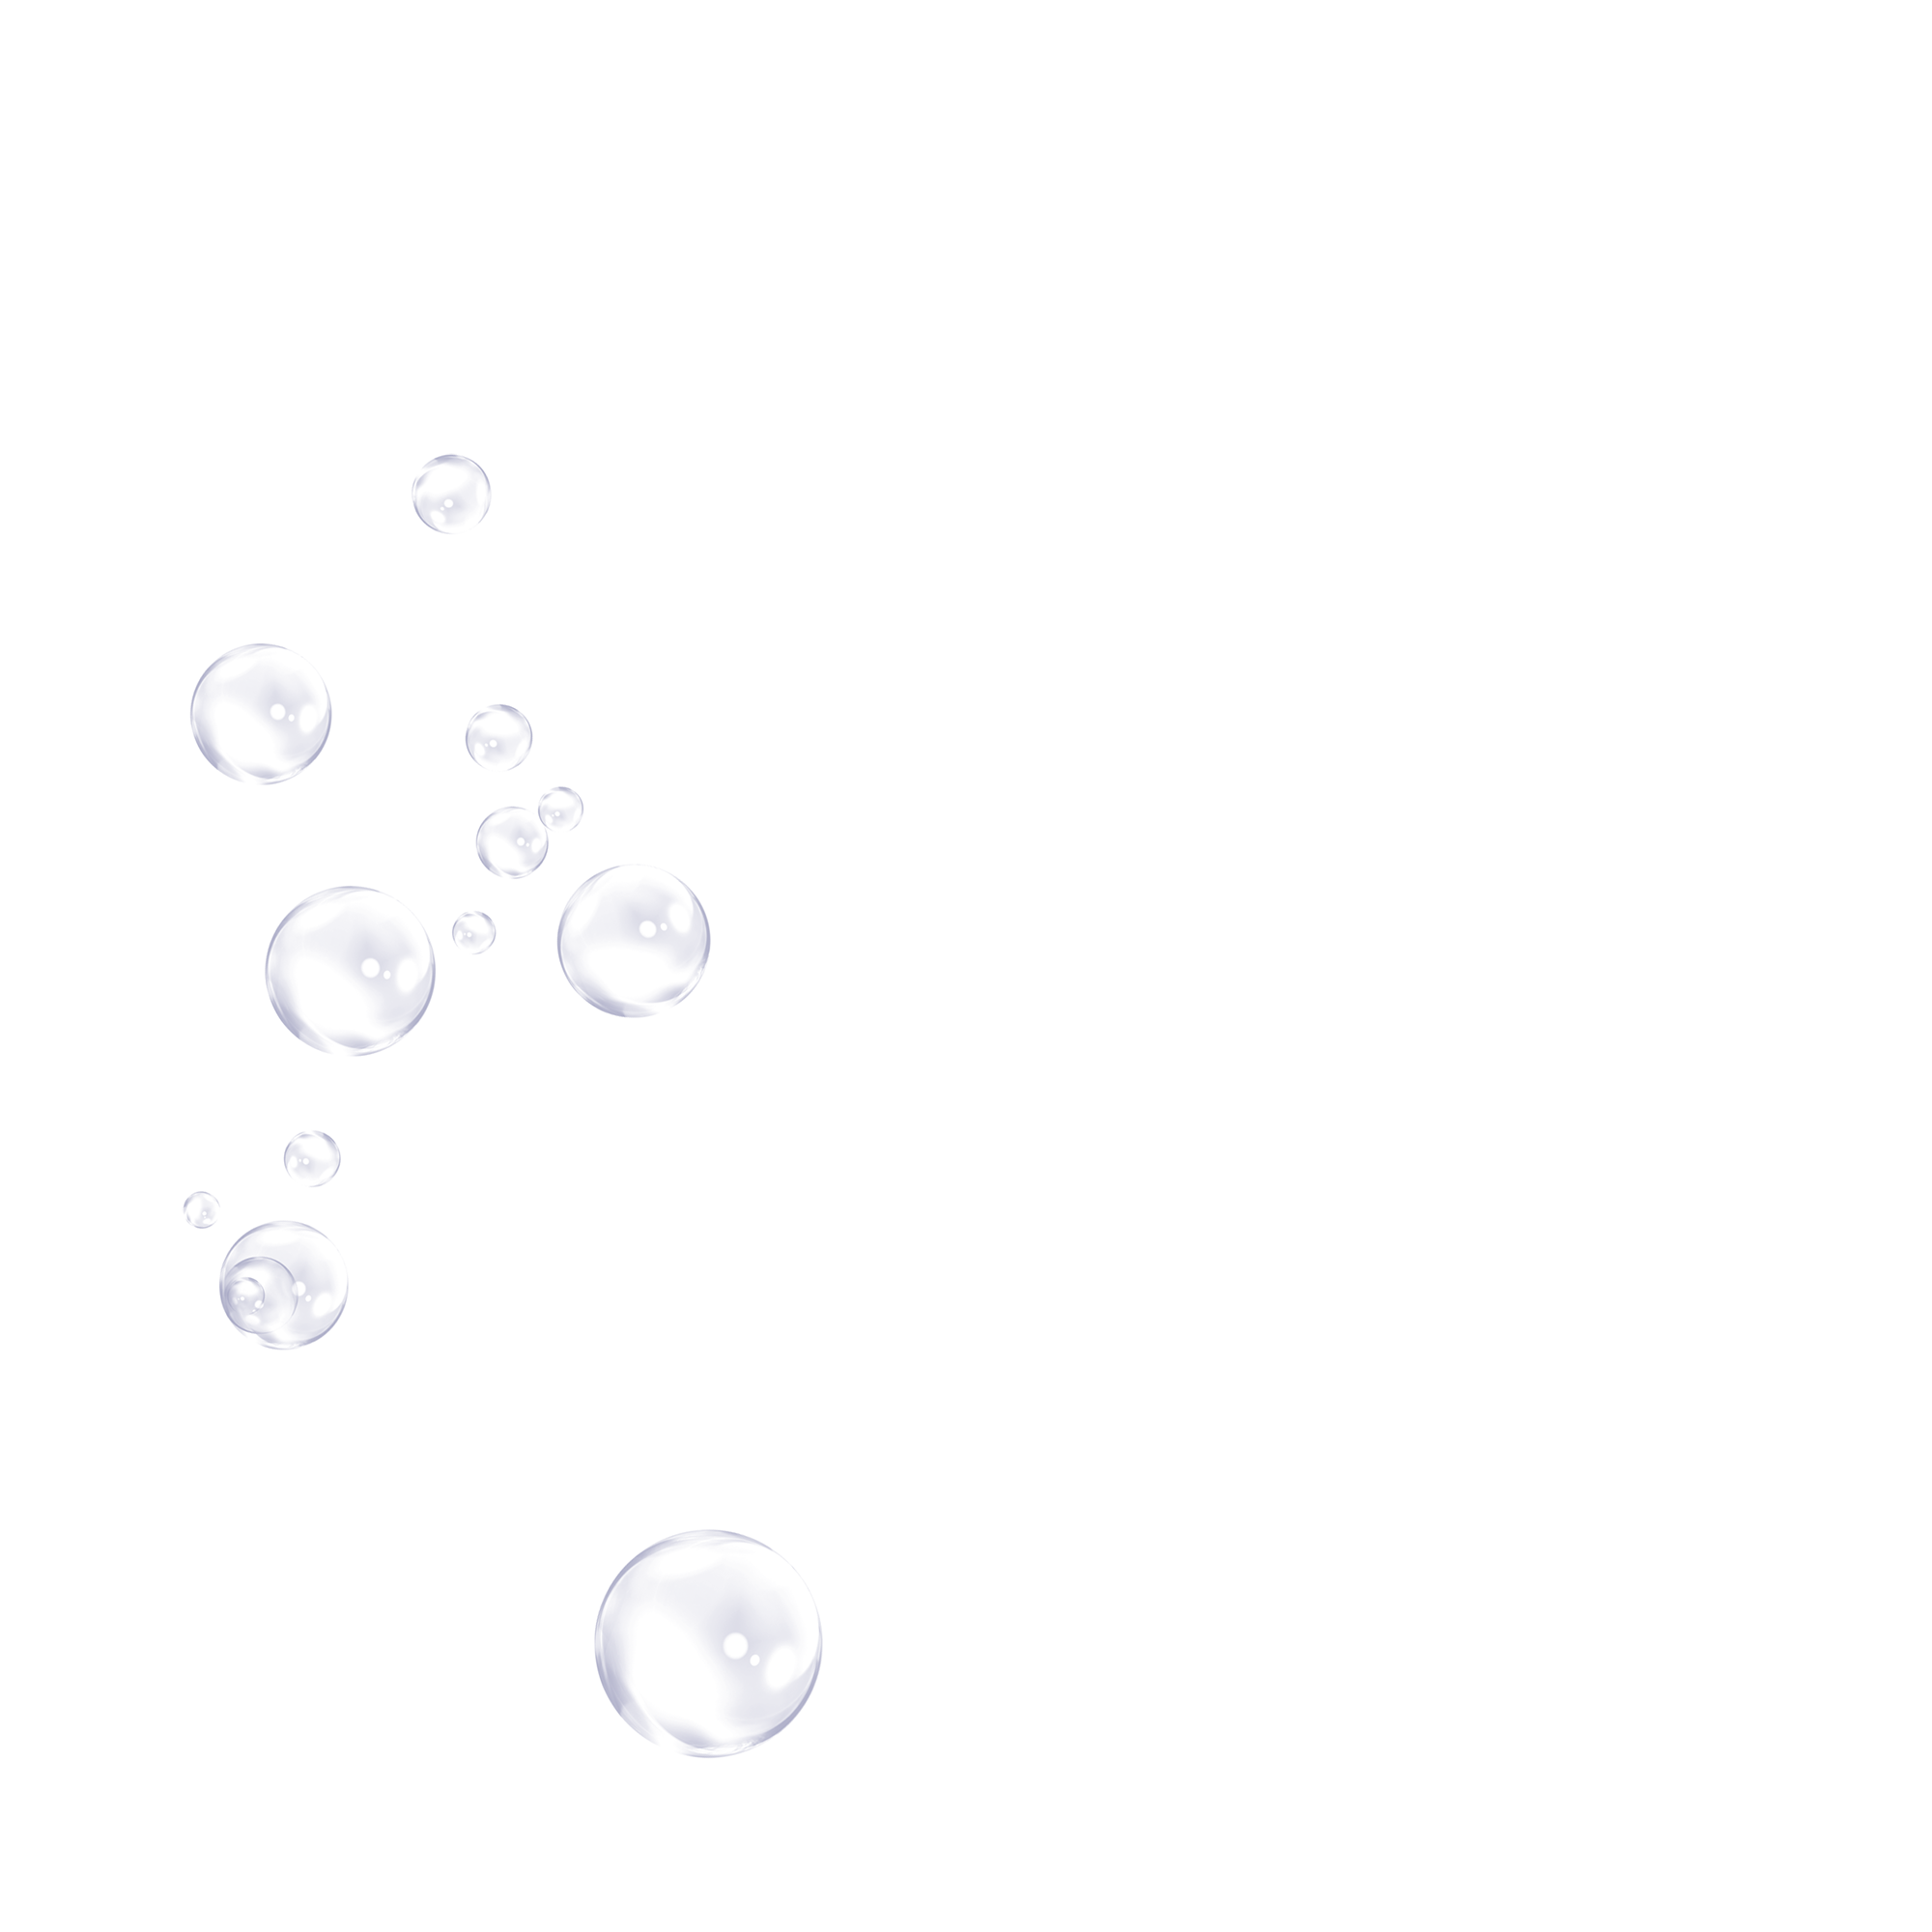 element bubble bubbles illustration png